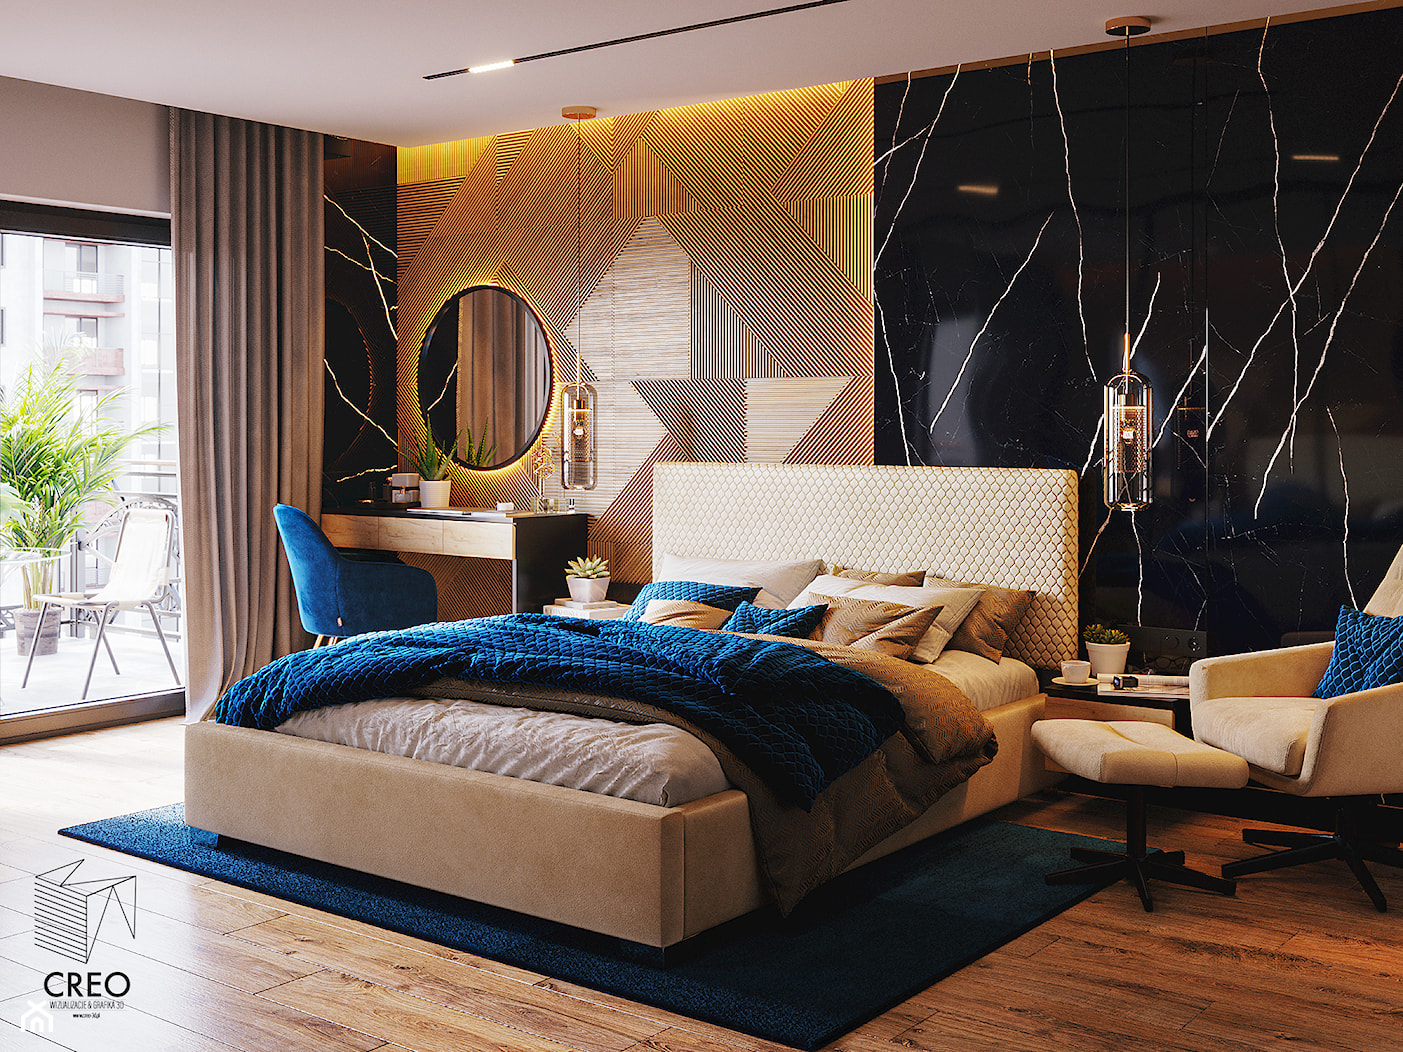 Sypialnia nowoczesna w ciepłym wydaniu - zdjęcie od Creo Wizualizacje 3d - Homebook